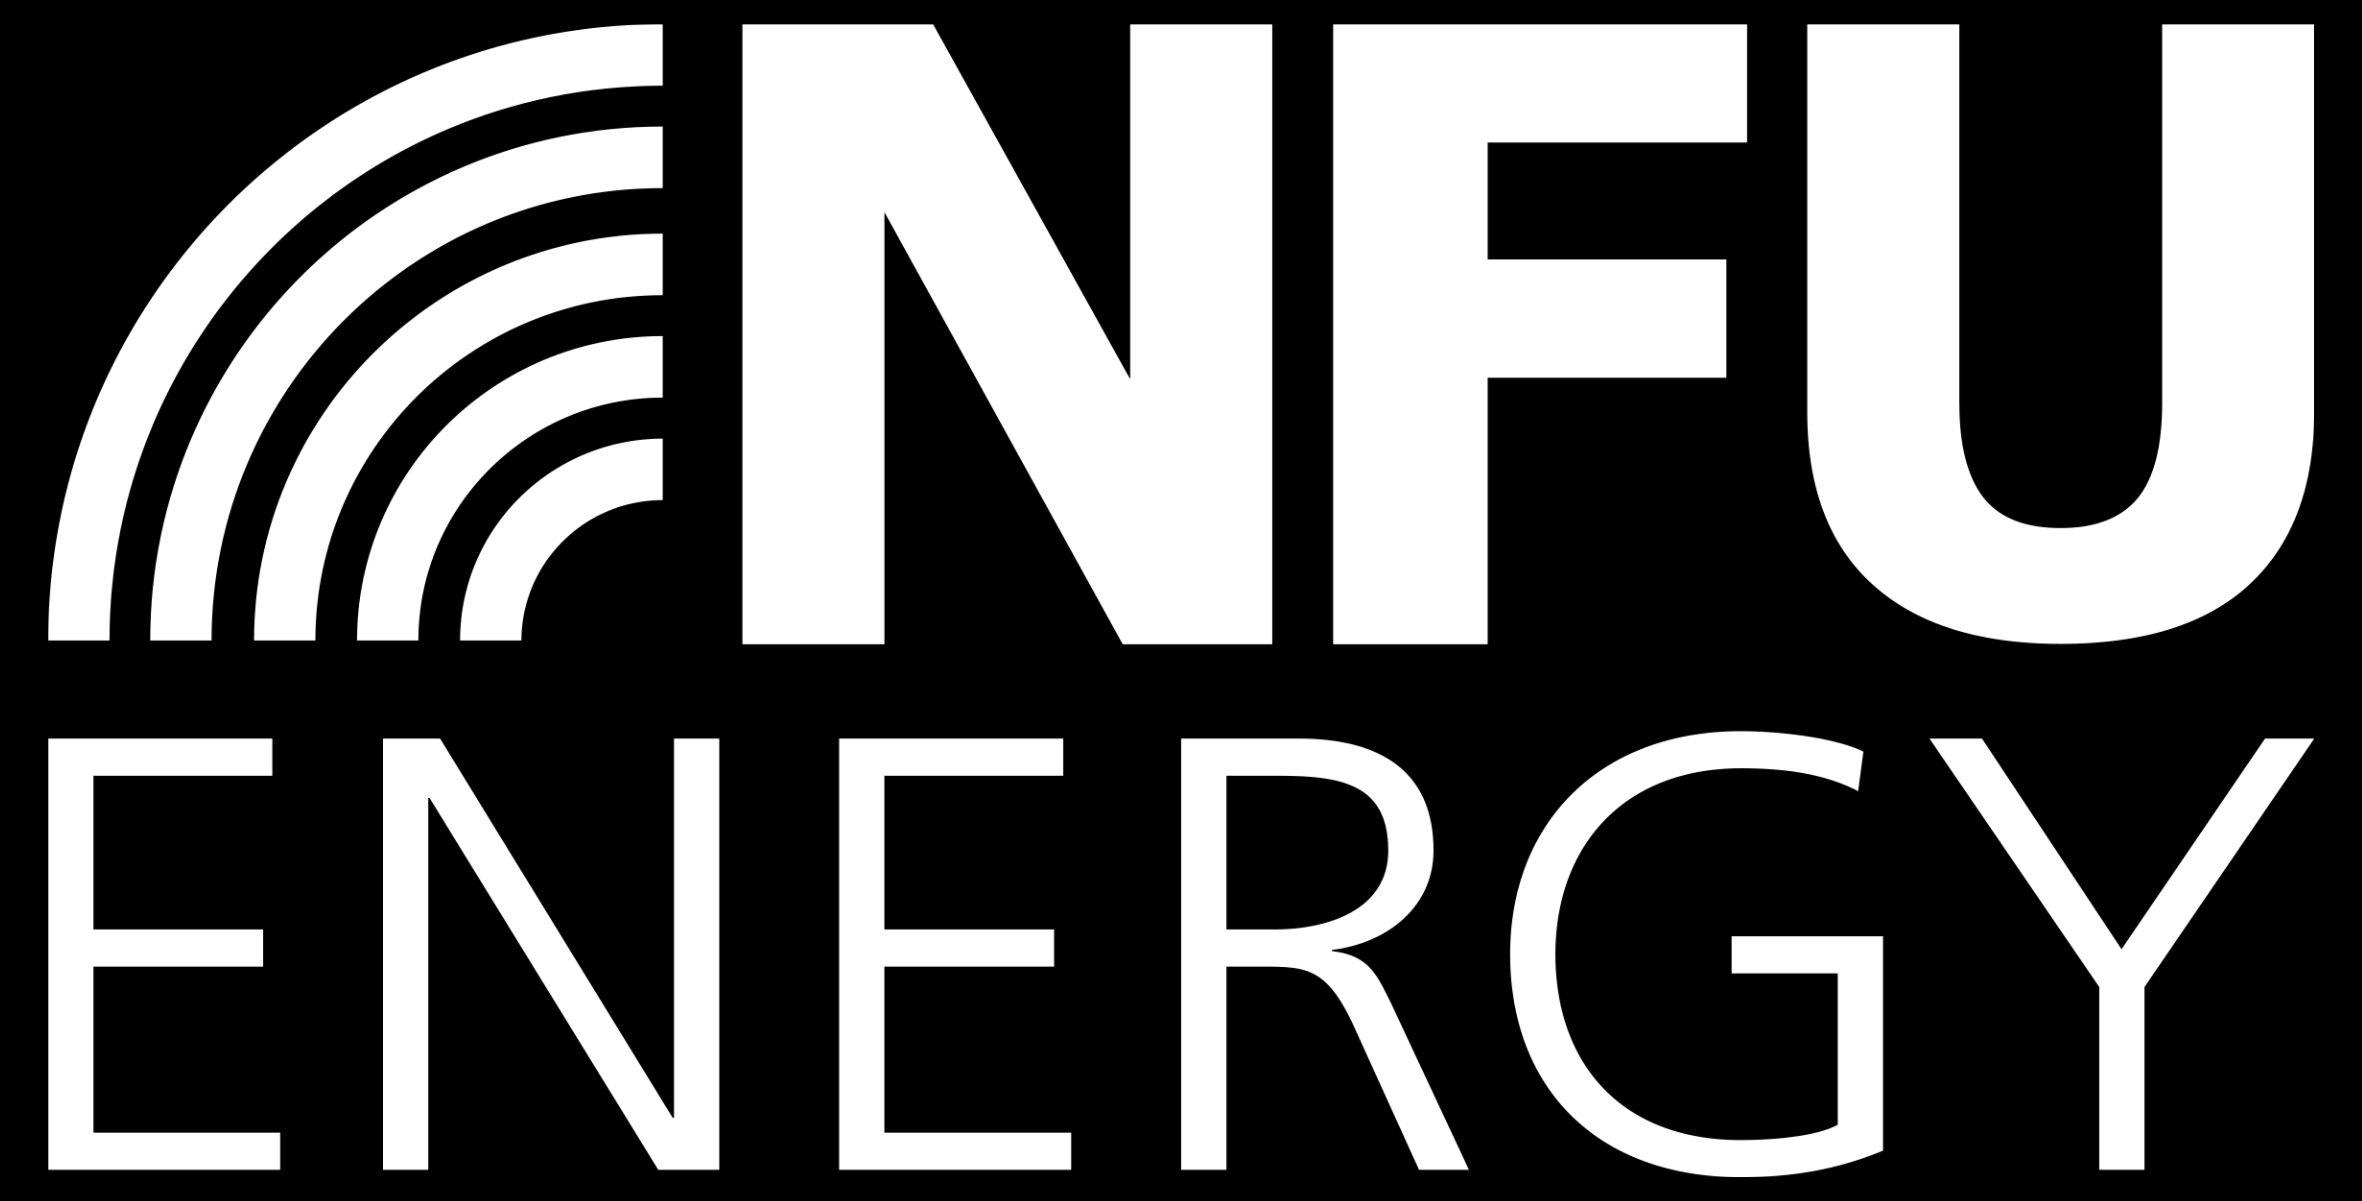 NFU Energy